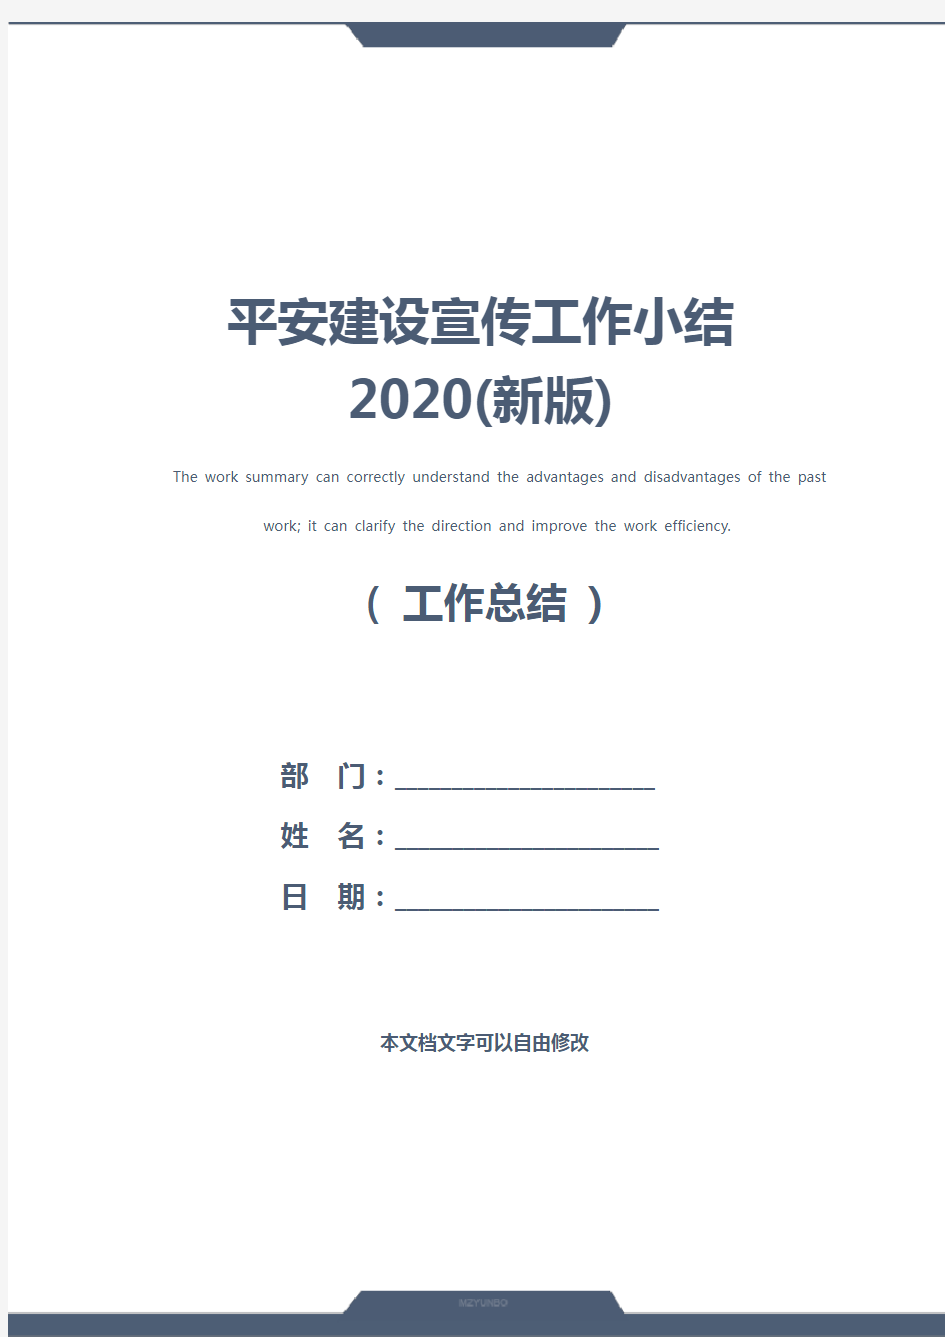 平安建设宣传工作小结2020(新版)